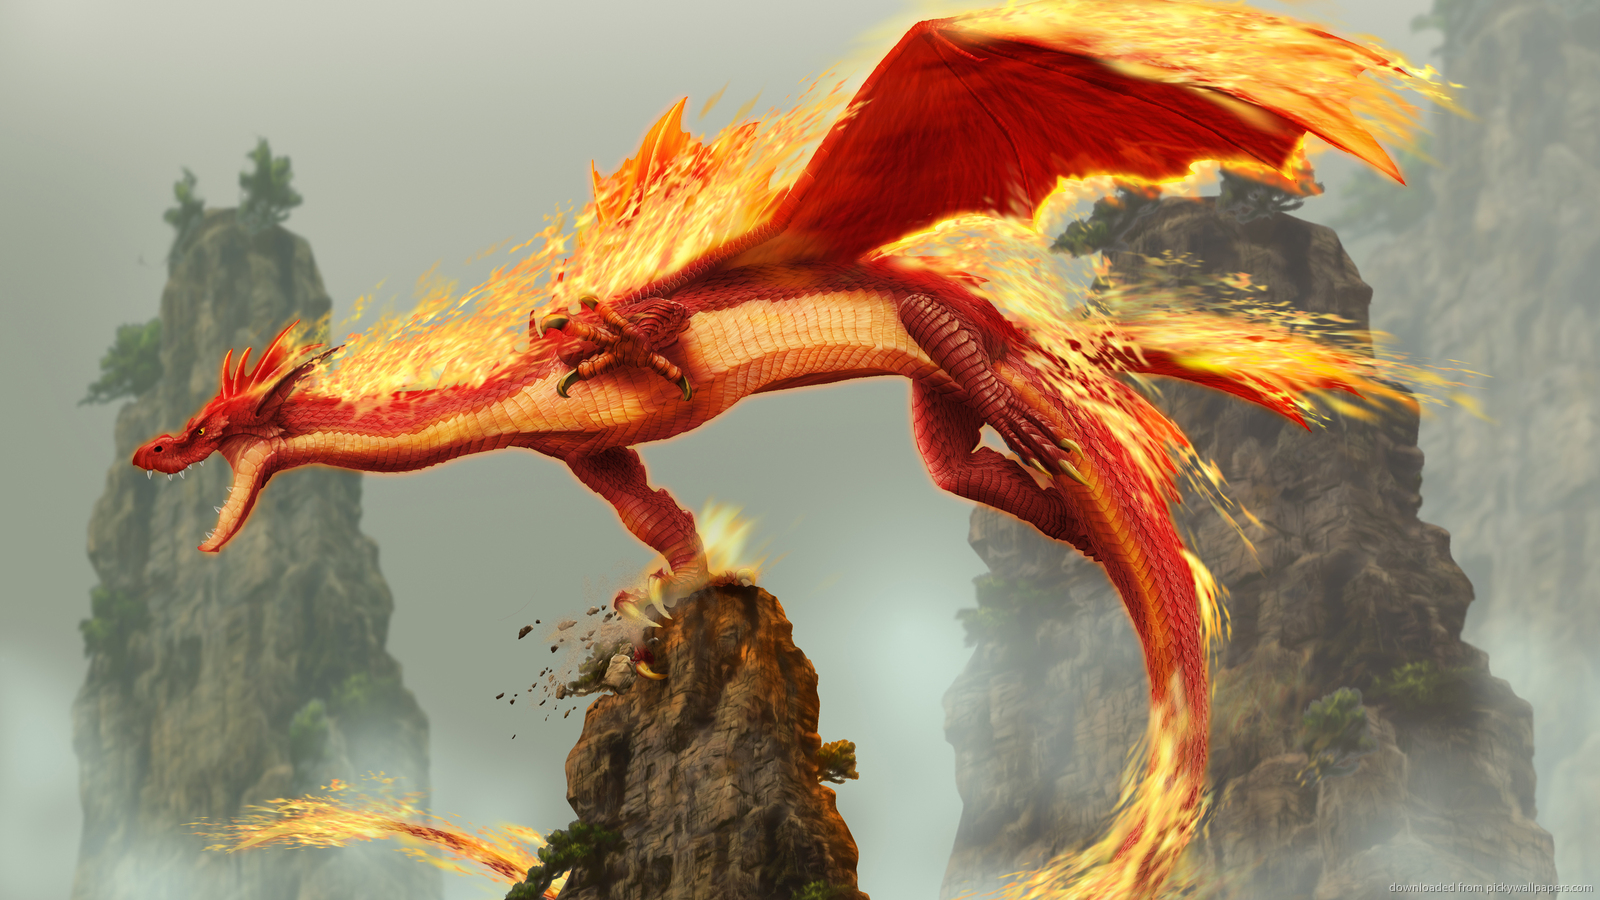 papier peint dragon de feu,dragon,oeuvre de cg,personnage fictif,créature mythique,mythologie